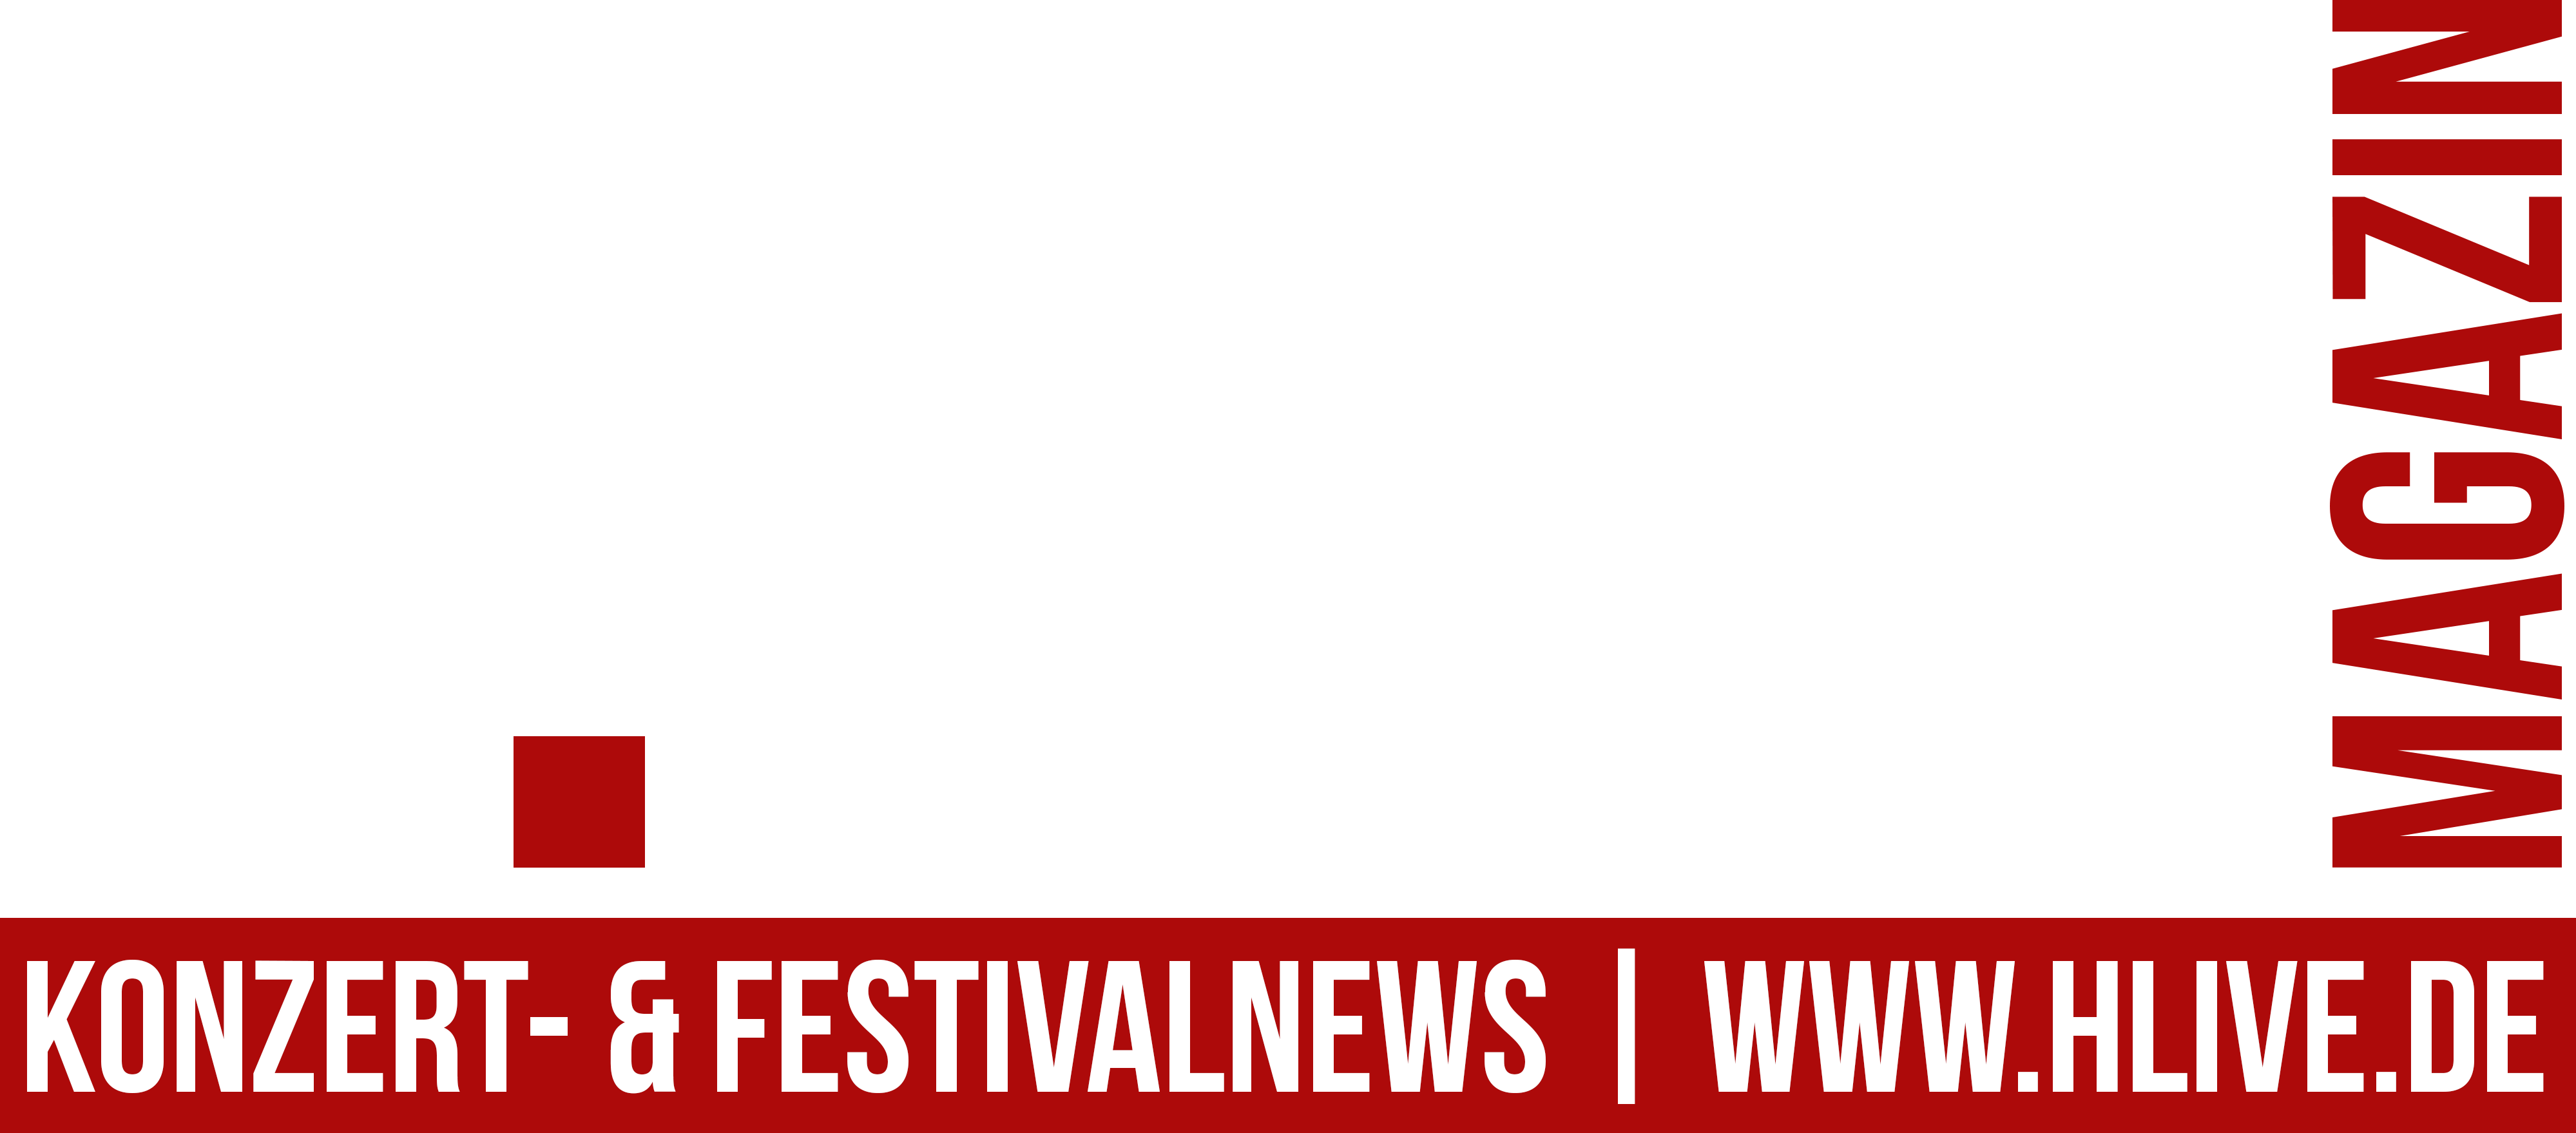 H.LIVE-Magazin | Konzert- und Festivanews